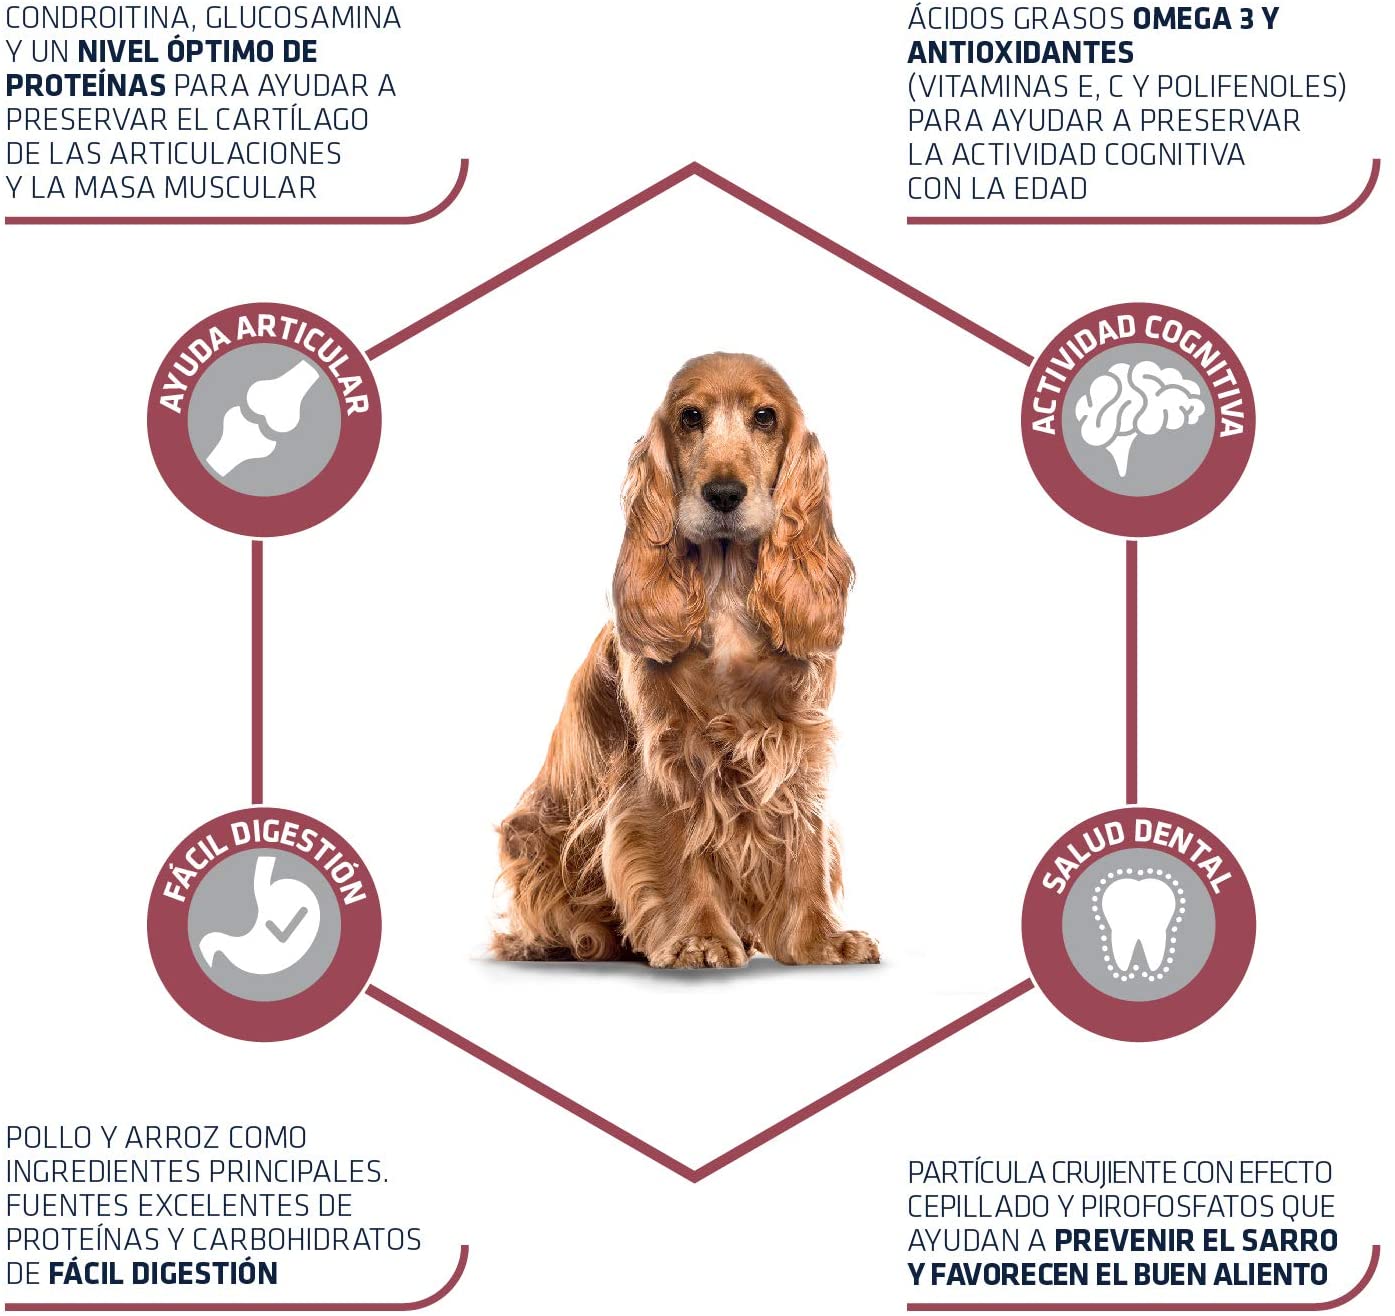  Advance Senior Medium - Pienso para Perros de Edad Avanzada de Razas Medianas - 12 kg 